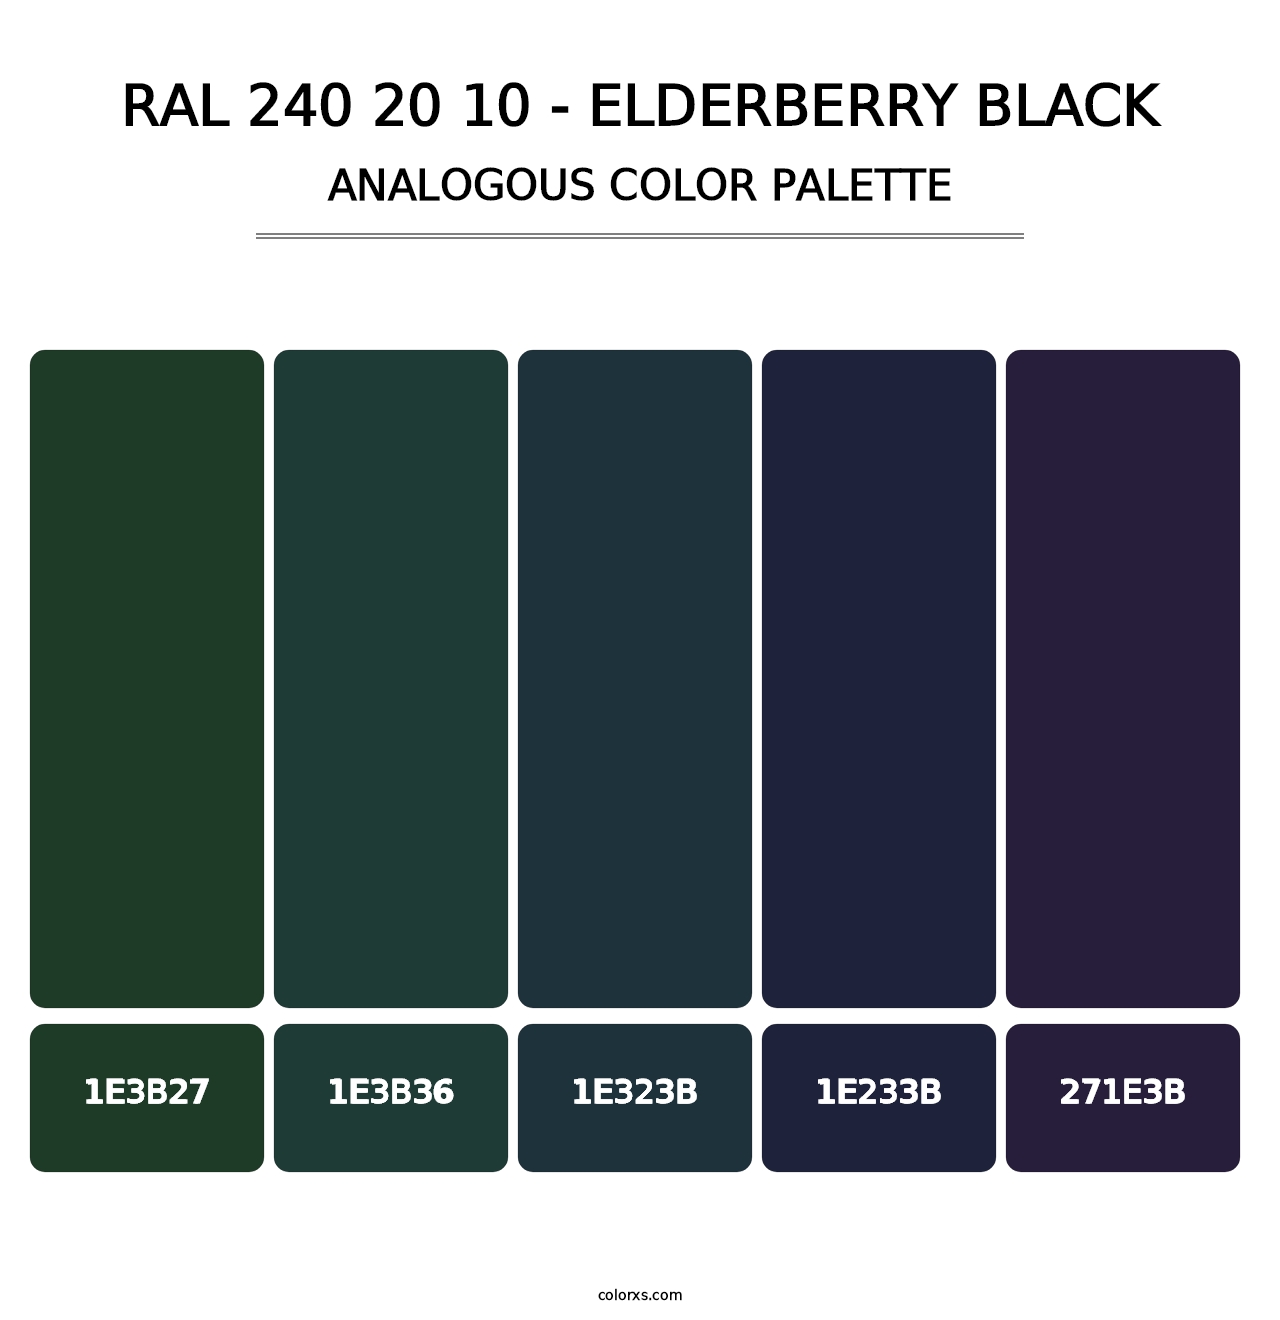 RAL 240 20 10 - Elderberry Black - Analogous Color Palette